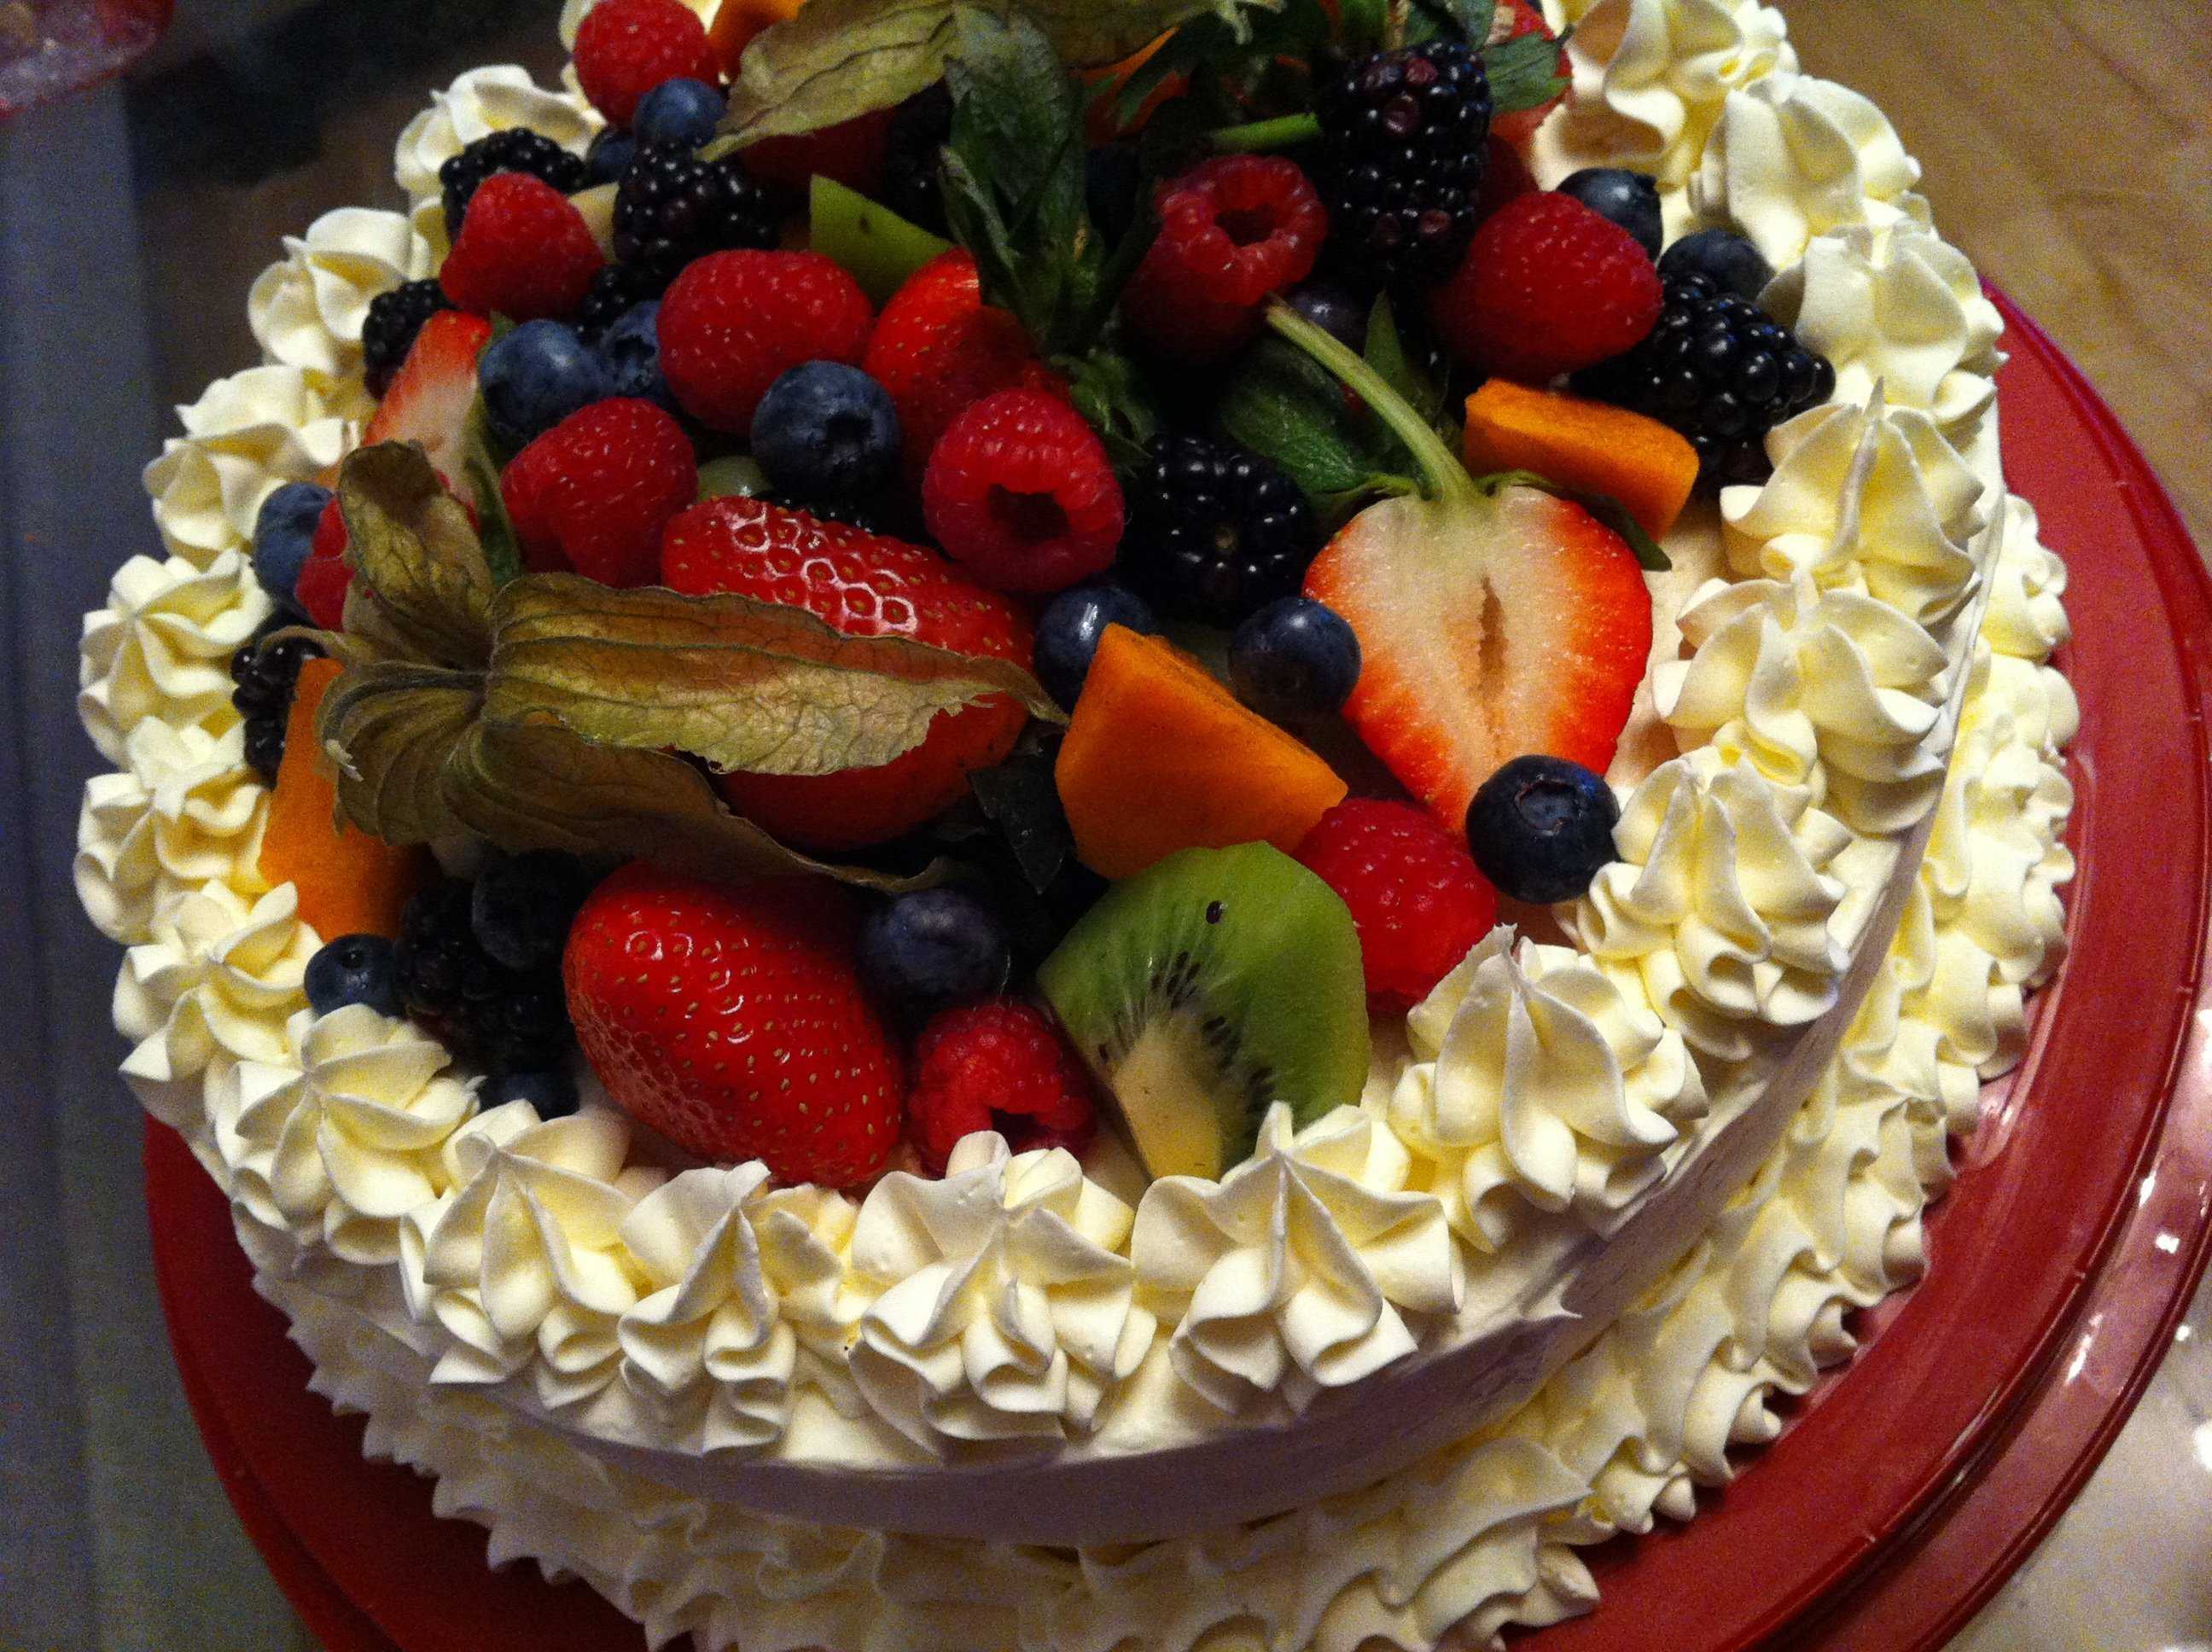 Украшение торта фруктами и ягодами. Украшение торта ягодами. Торт украшенный фруктами. Красиво украсить торт фруктами.